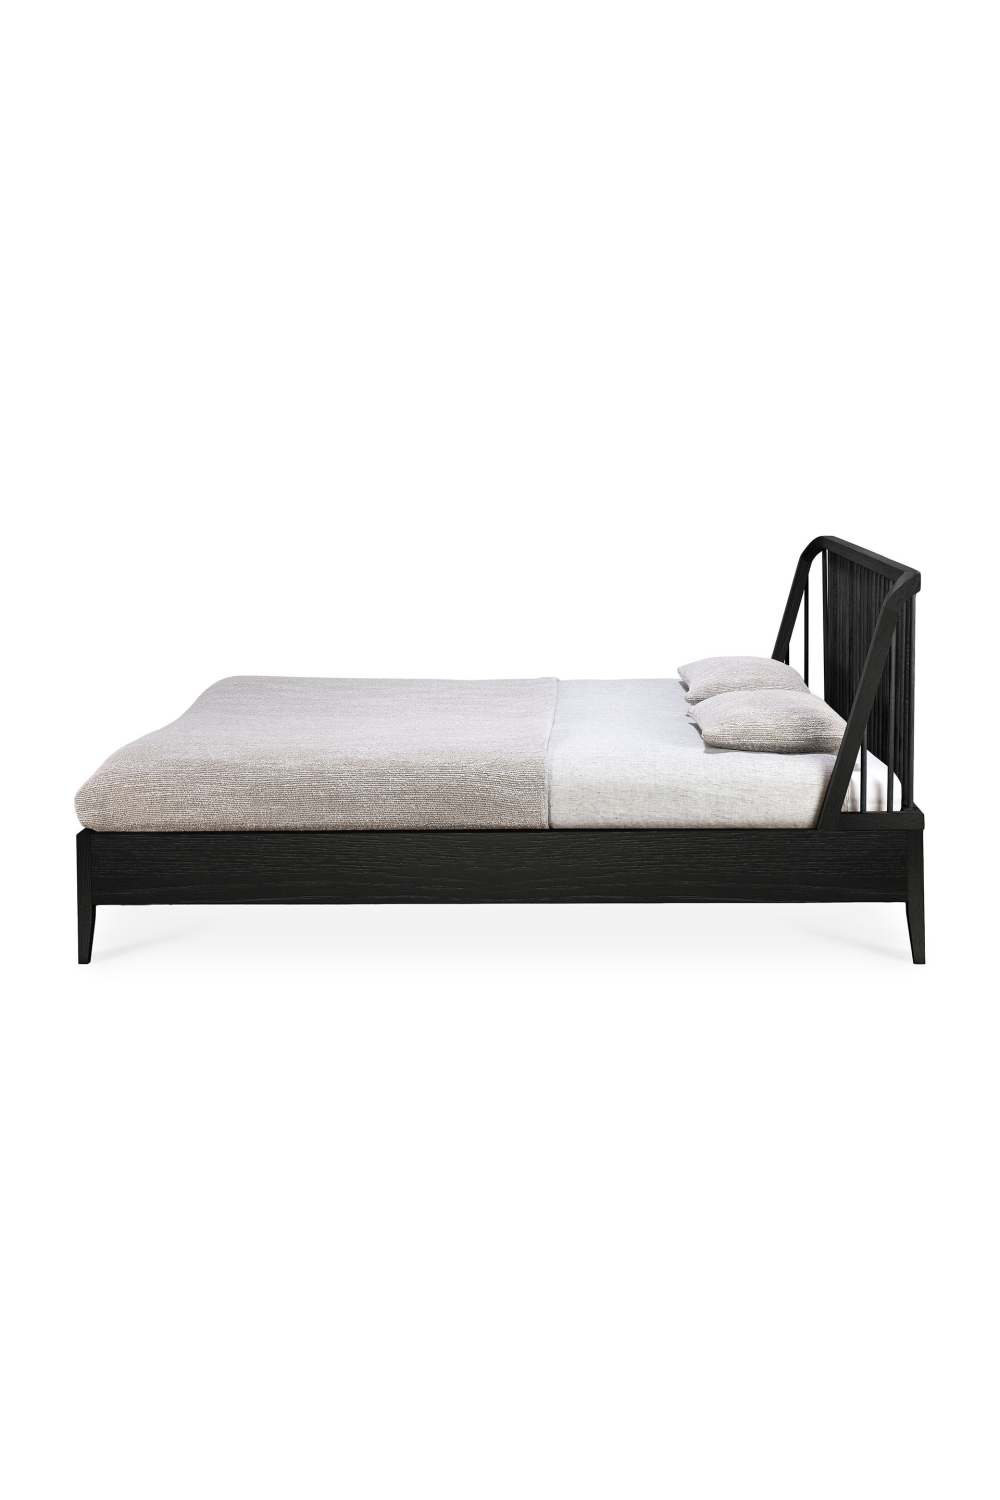 Black Solid Oak Bed | Ethnicraft Spindle | Oroa.com